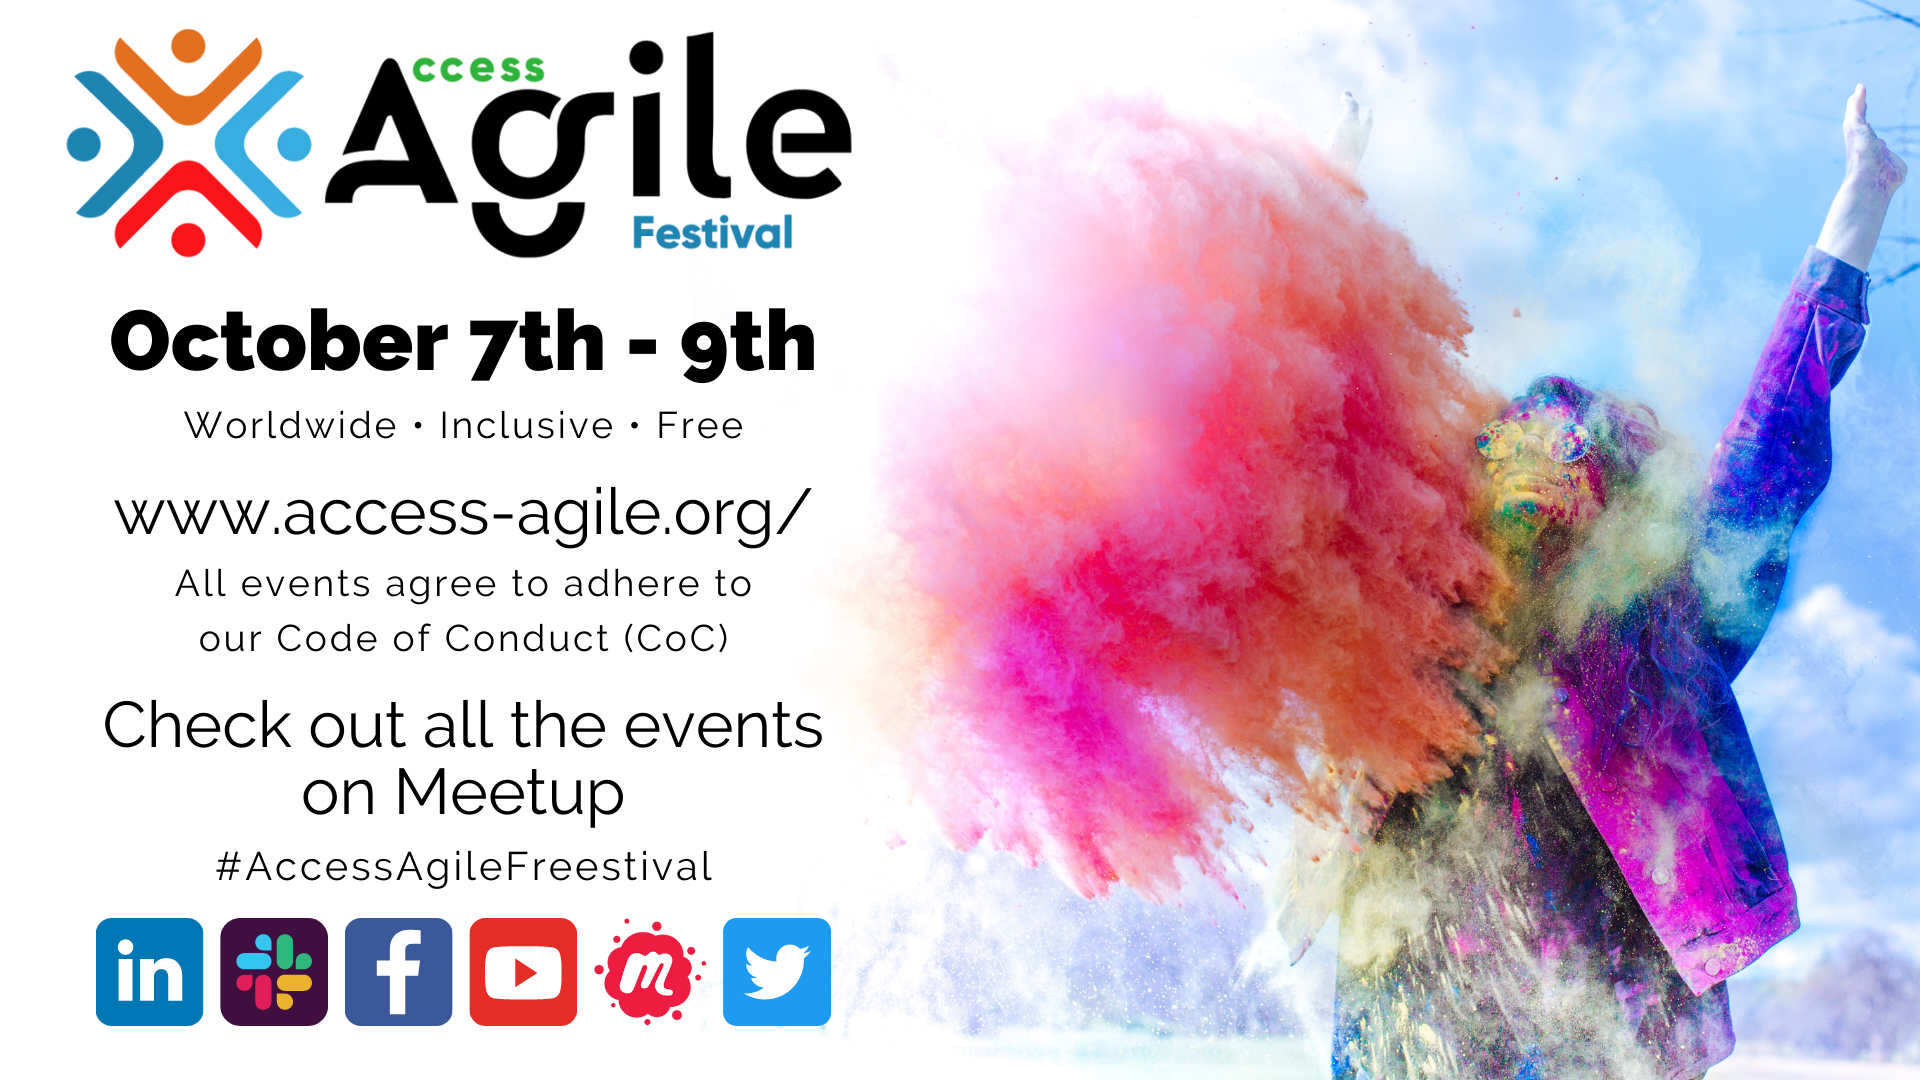 10/07/2021 – The Access Agile Festival